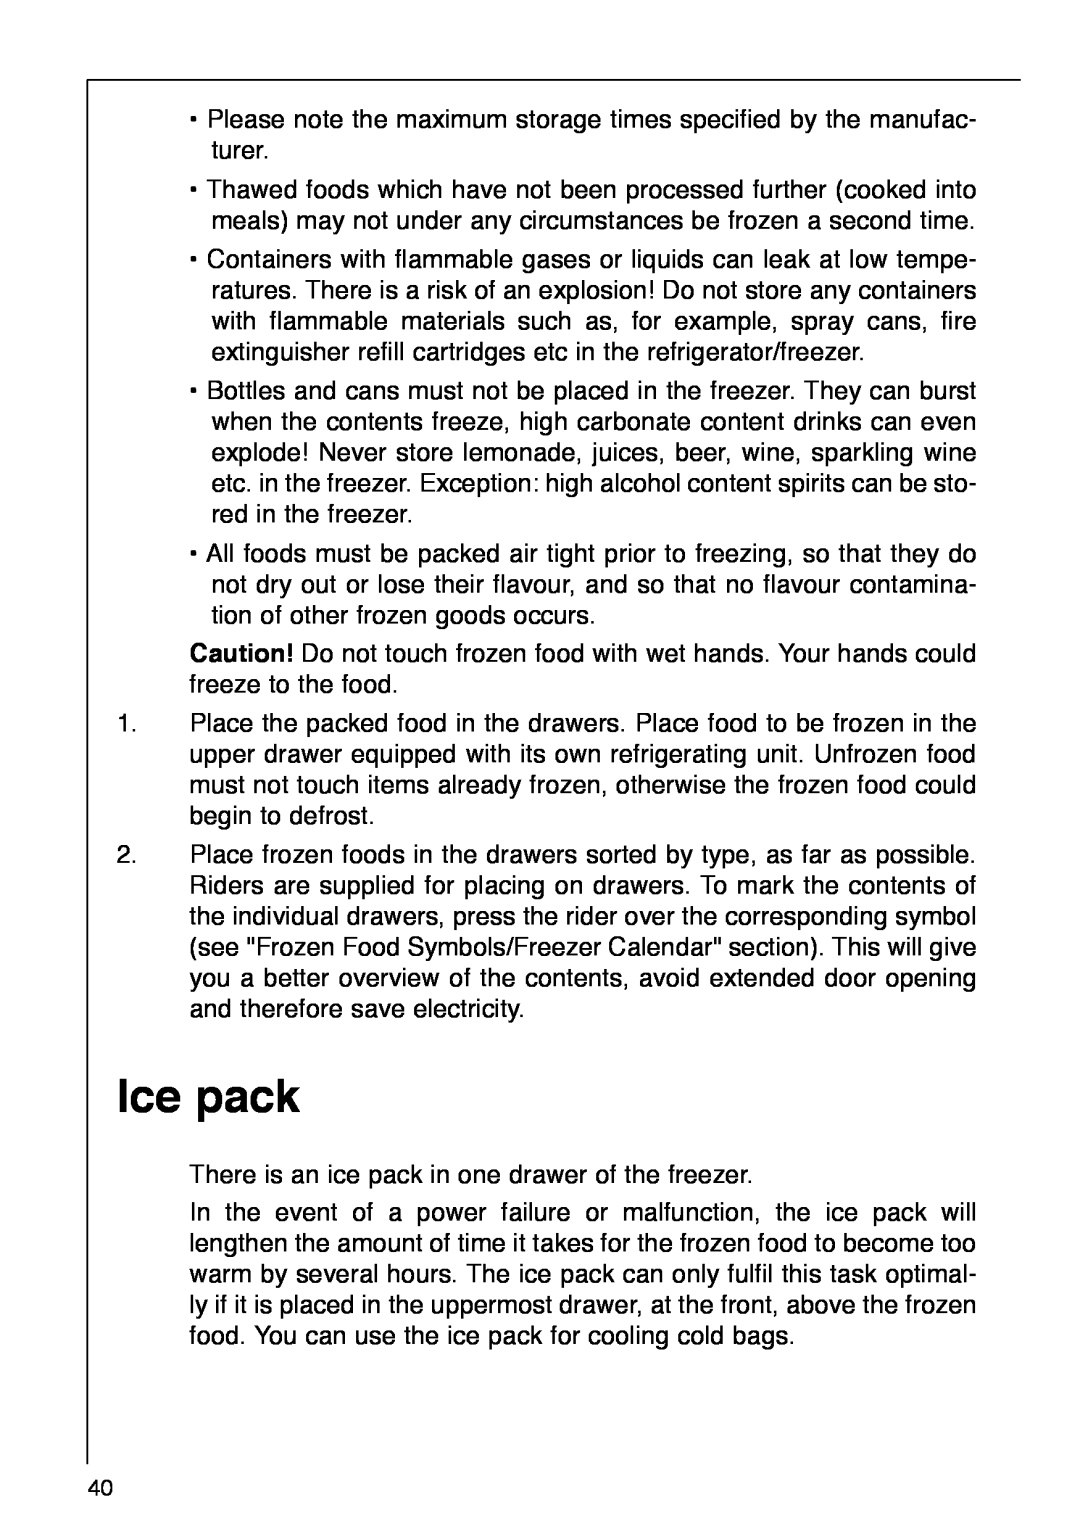 AEG 290-6I installation instructions Ice pack 